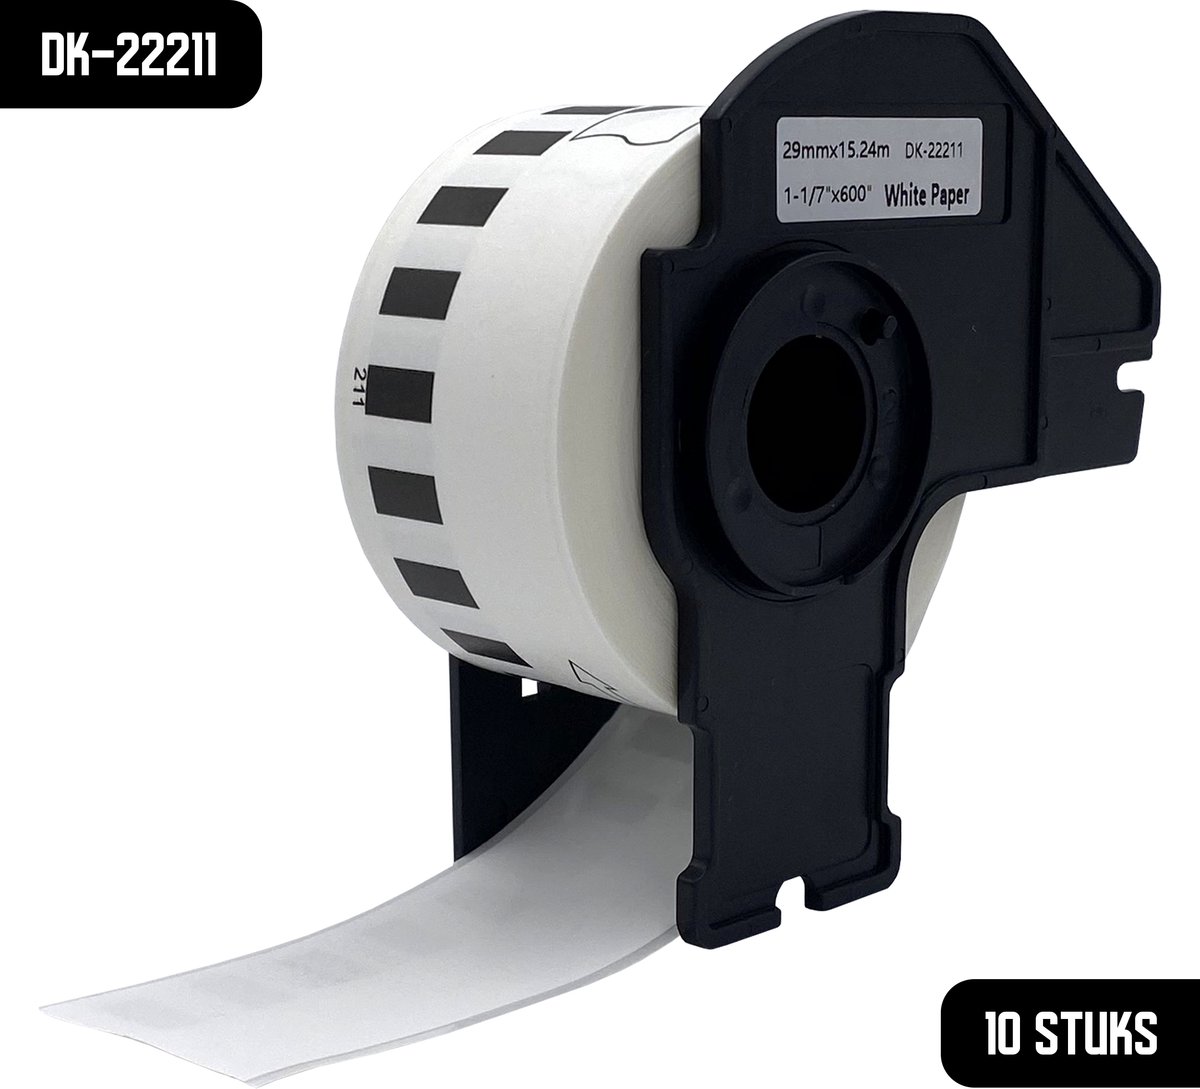 DULA Brother Compatible DK-22211 - Doorlopende labelrol - 10 rollen - 29 mm x 15,24 m - Zwart op wit - Filmtape